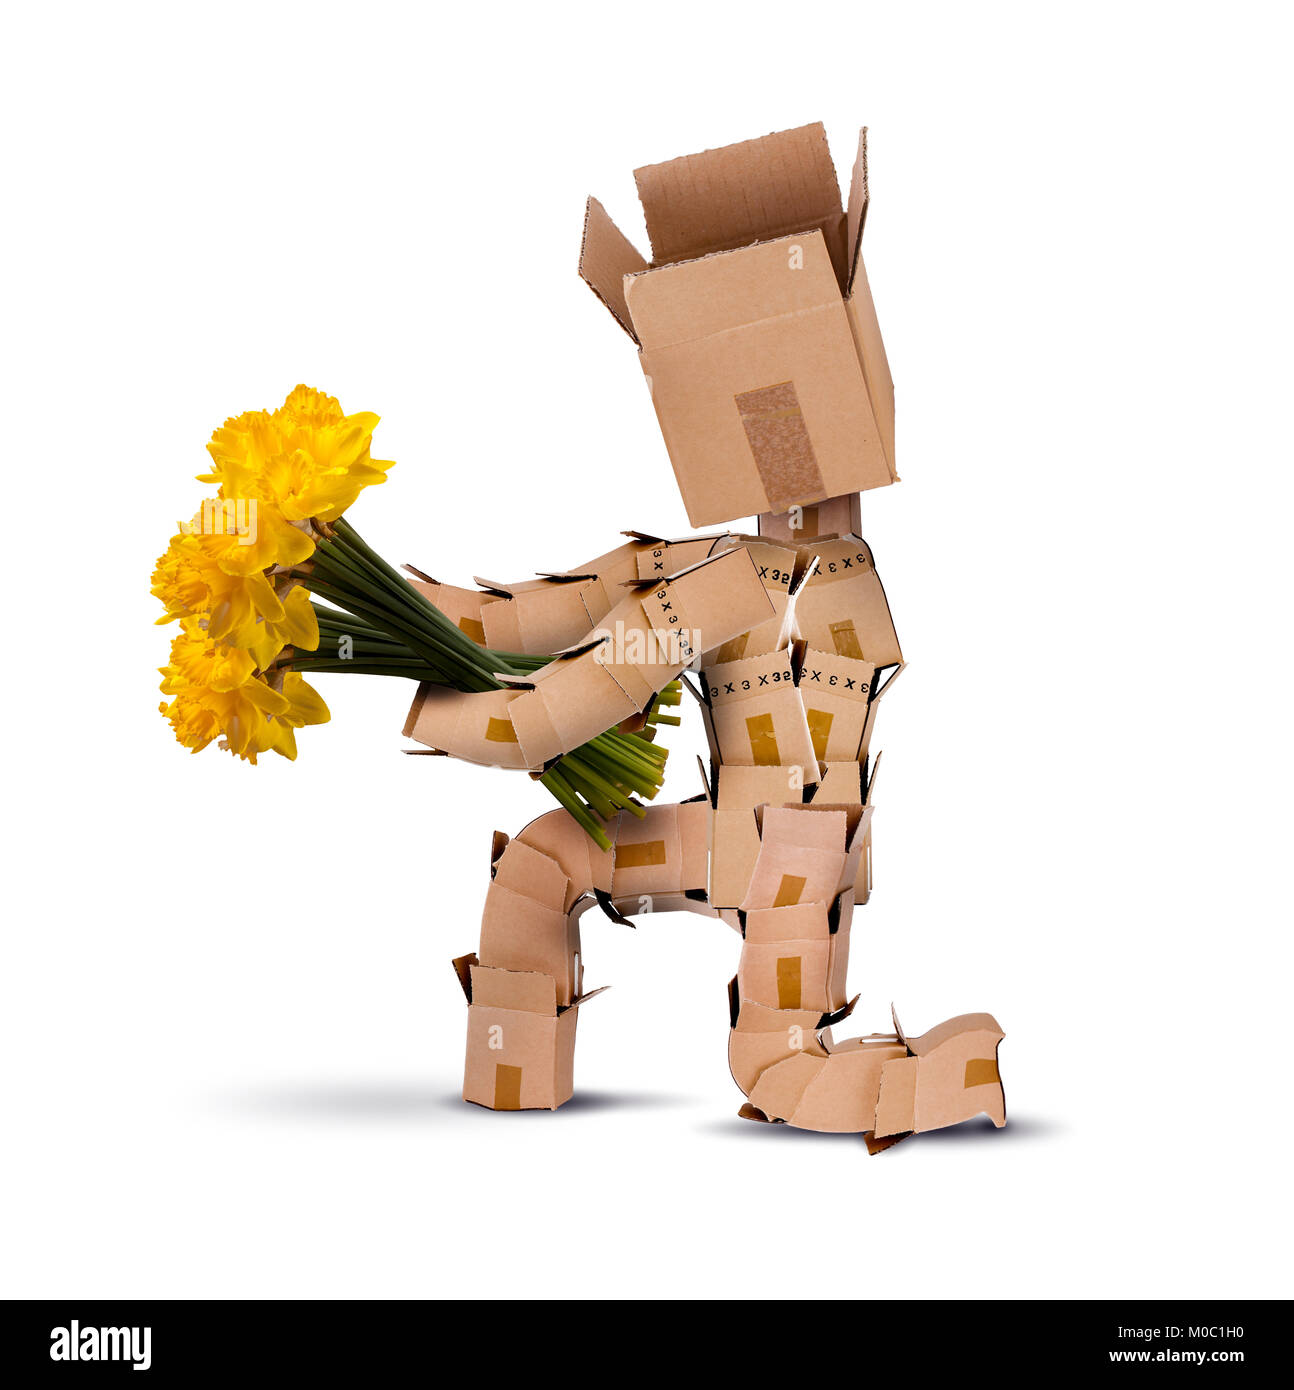 Fort caractère sur genoux holding bouquet de fleurs jonquille jaune isolé sur fond blanc. Livraison de fleurs ou de cadeau concept Banque D'Images